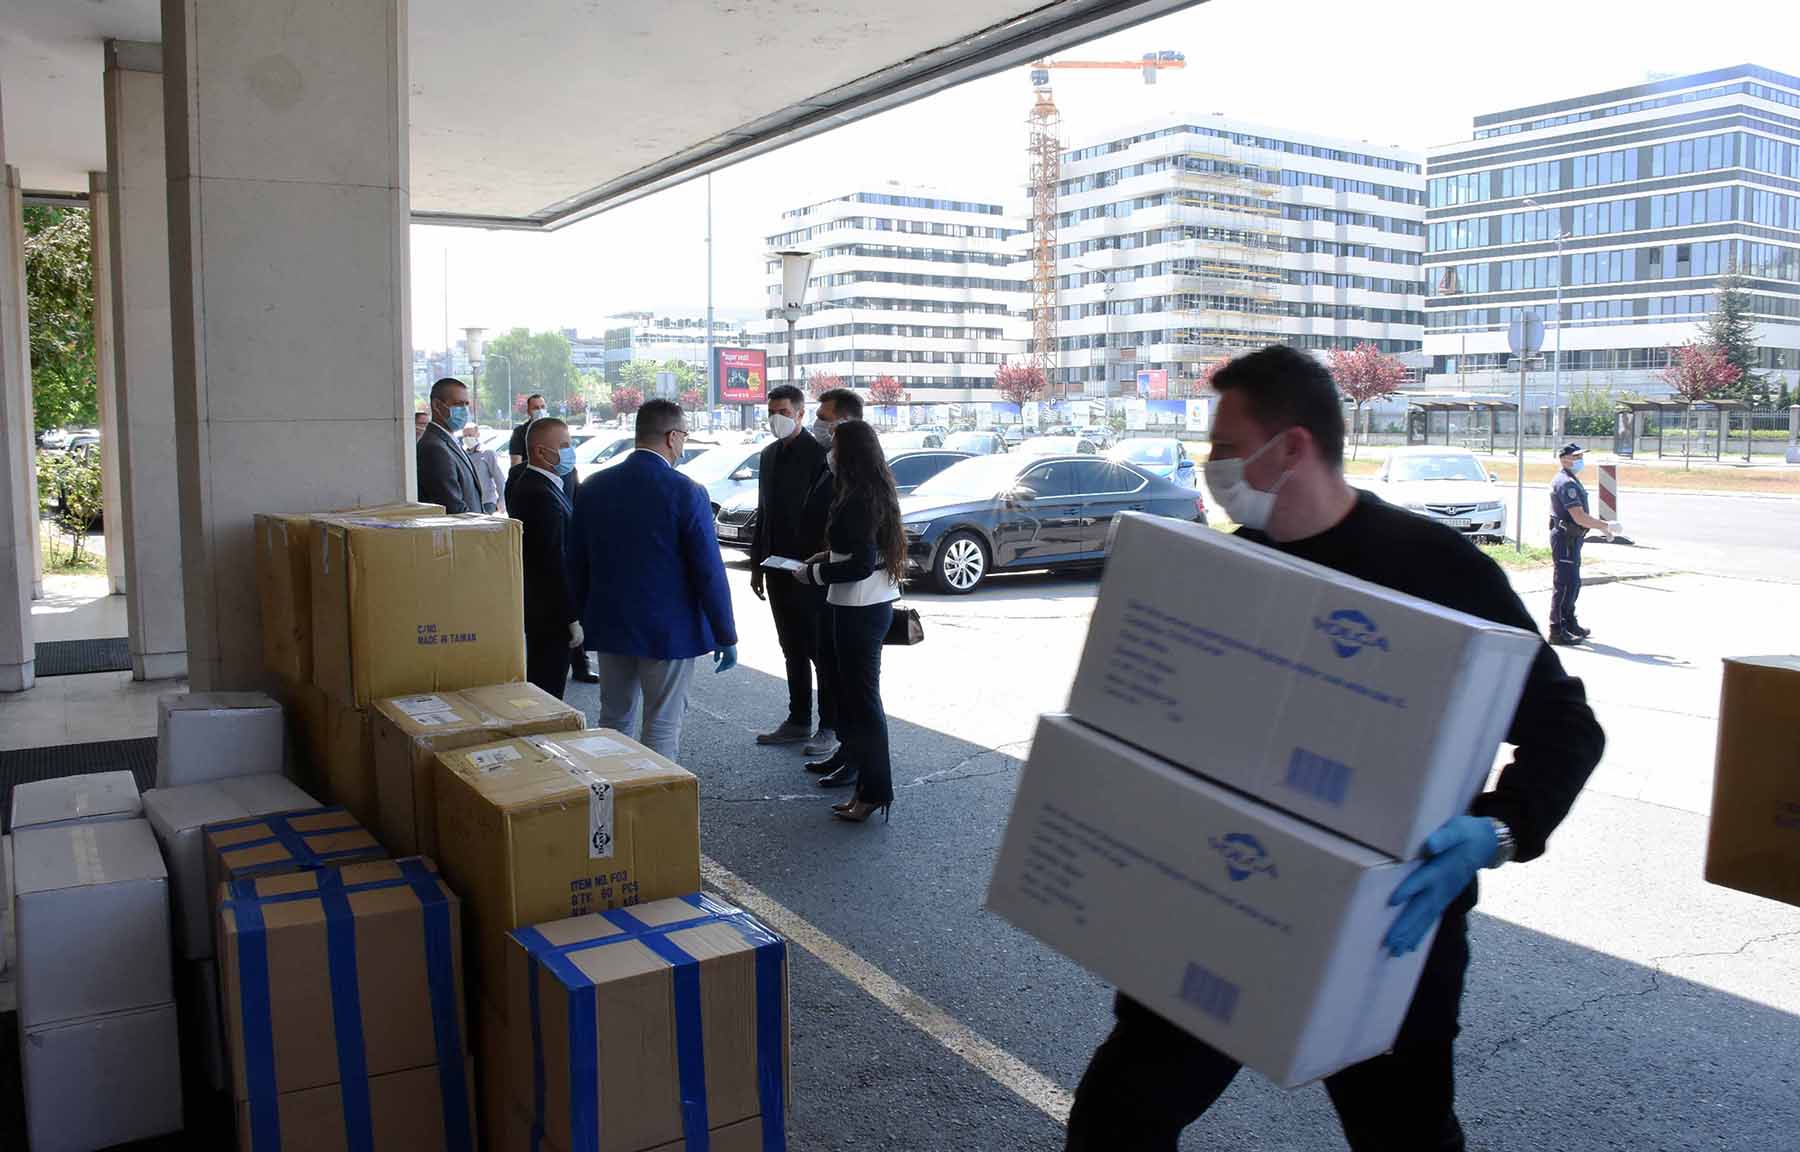 Српско-руски хуманитарни центар донирао вредну опрему припадницима МУП-а